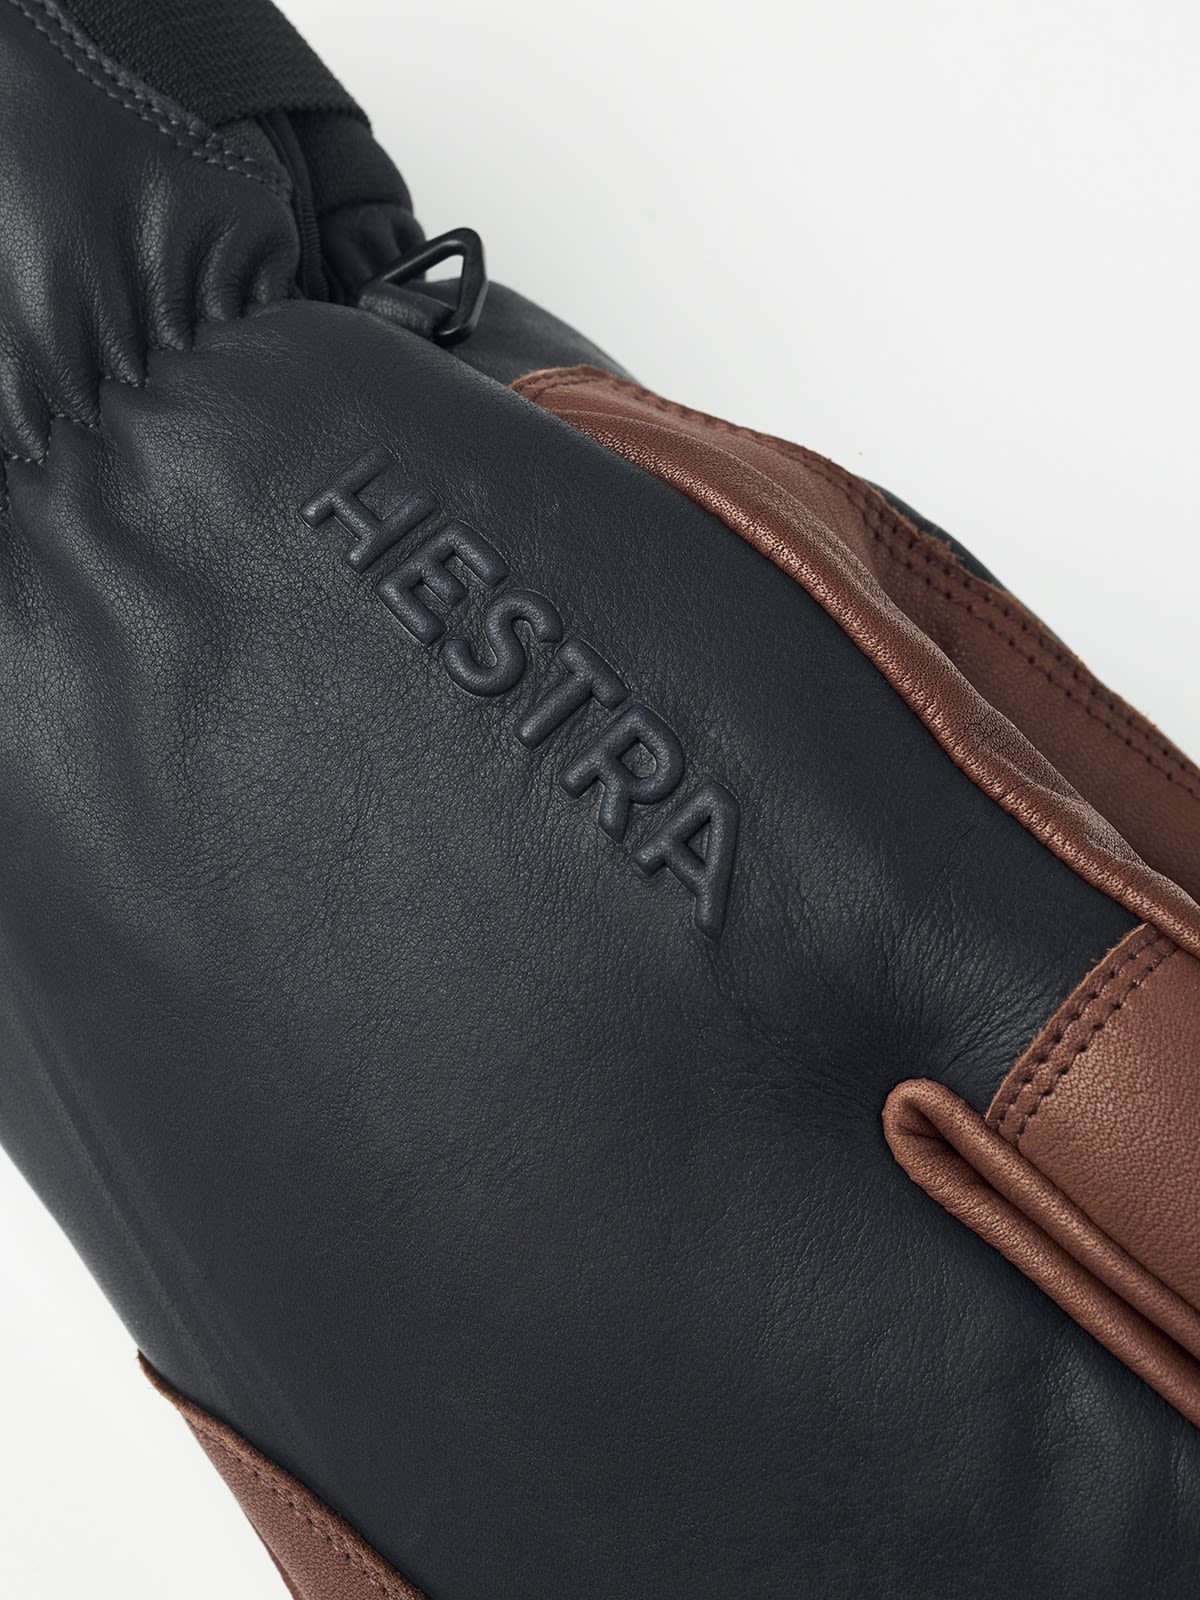 Hestra Topo 3 Fleecehandschuhe / Accessoires Hestra Finger